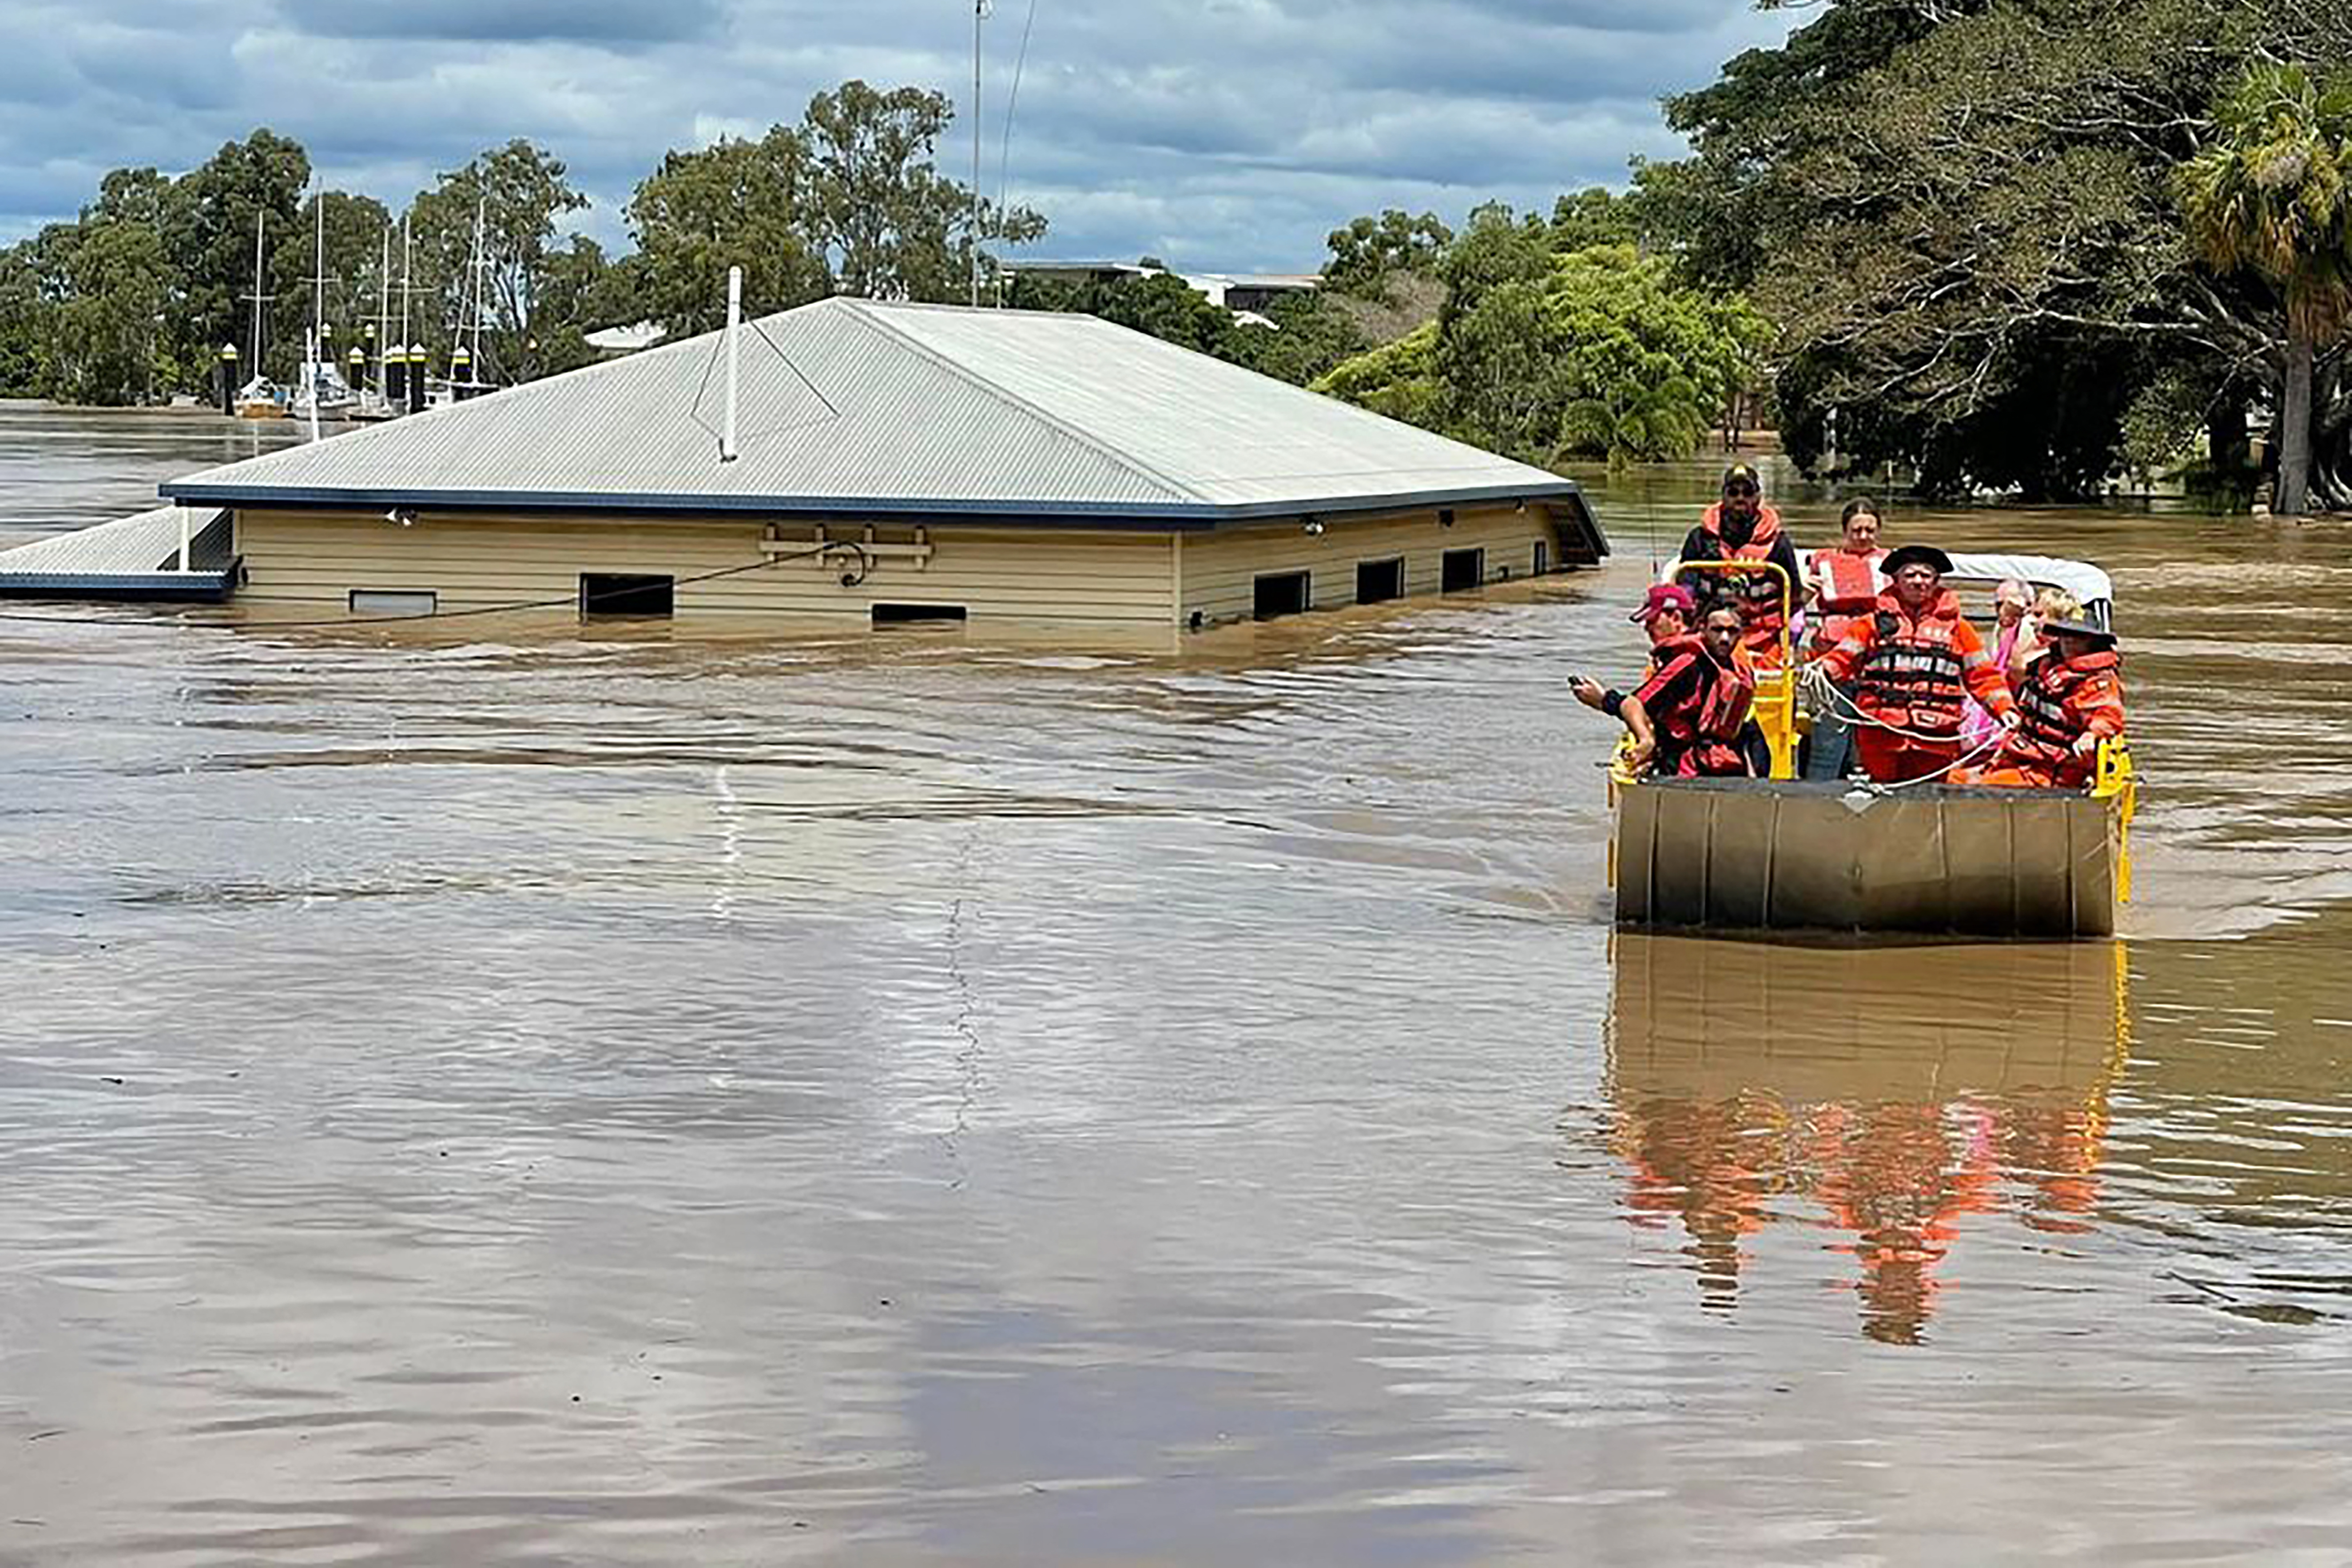 Tízezreket evakuáltak Ausztráliában az árvíz miatt, Brisbane-ben 3 nap alatt leesett az éves csapadékmennyiség 80 százaléka